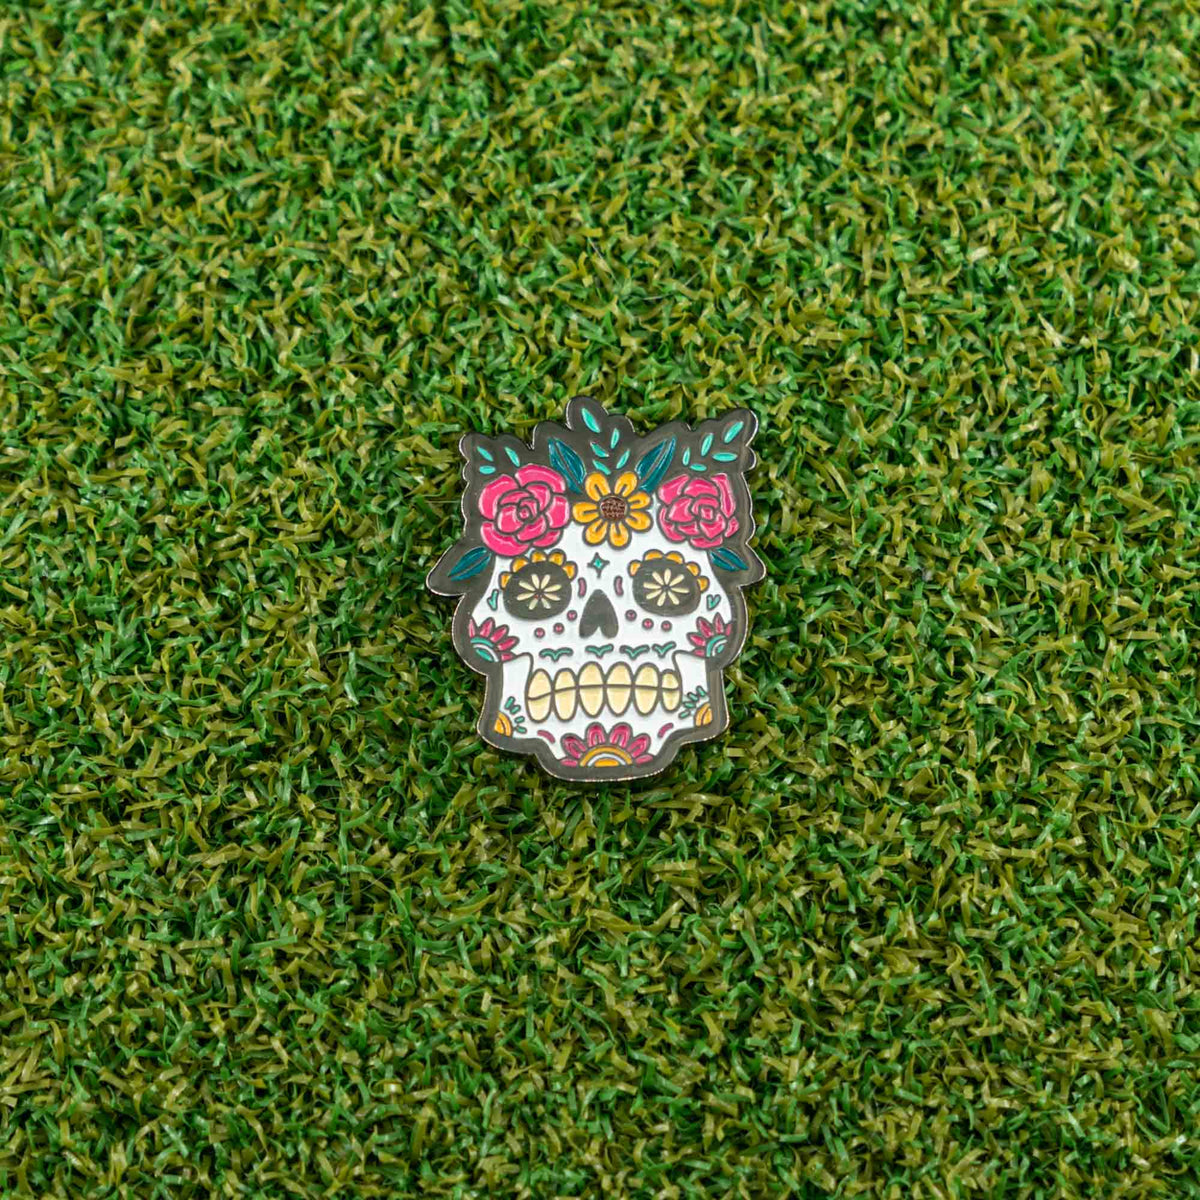 sugar skull golf ball marker calavera roberta grass